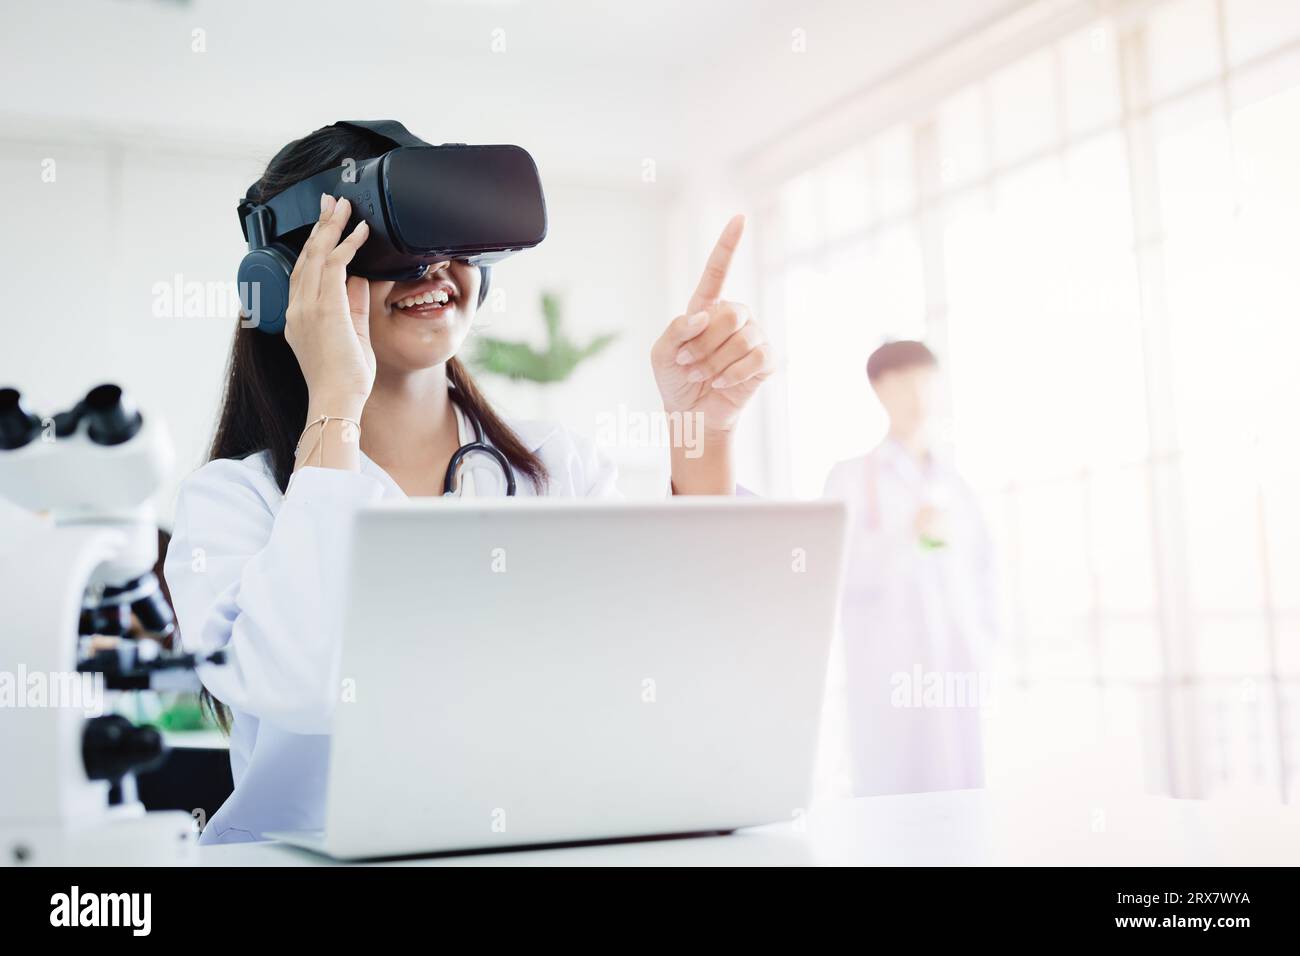 Studente che utilizza la tecnologia degli occhiali per realtà virtuale per aiutare le classi di scienze dell'apprendimento visivo nella scuola moderna Foto Stock